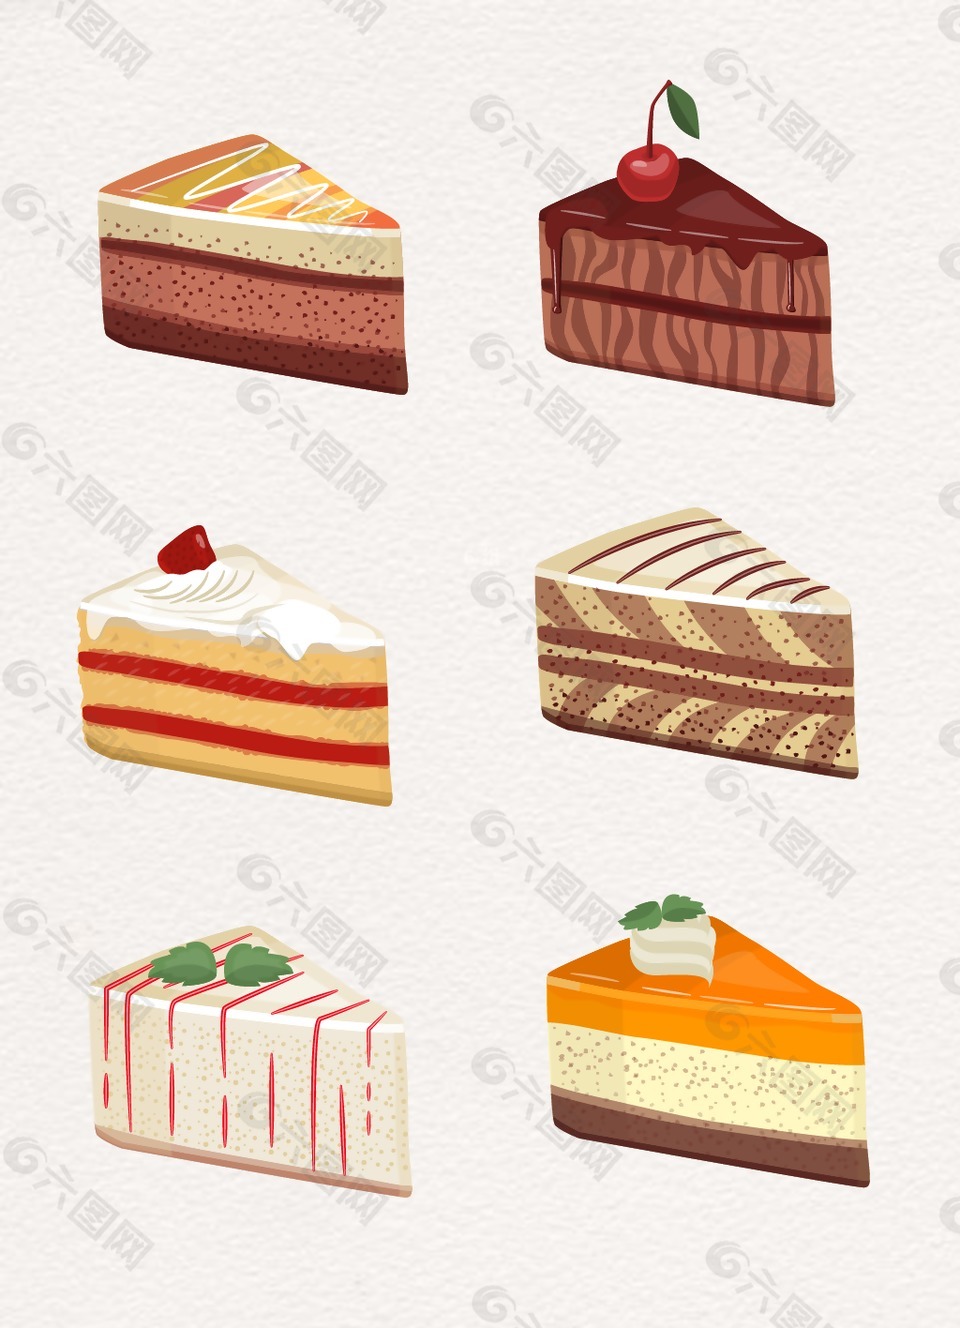 三角形蛋糕食物设计